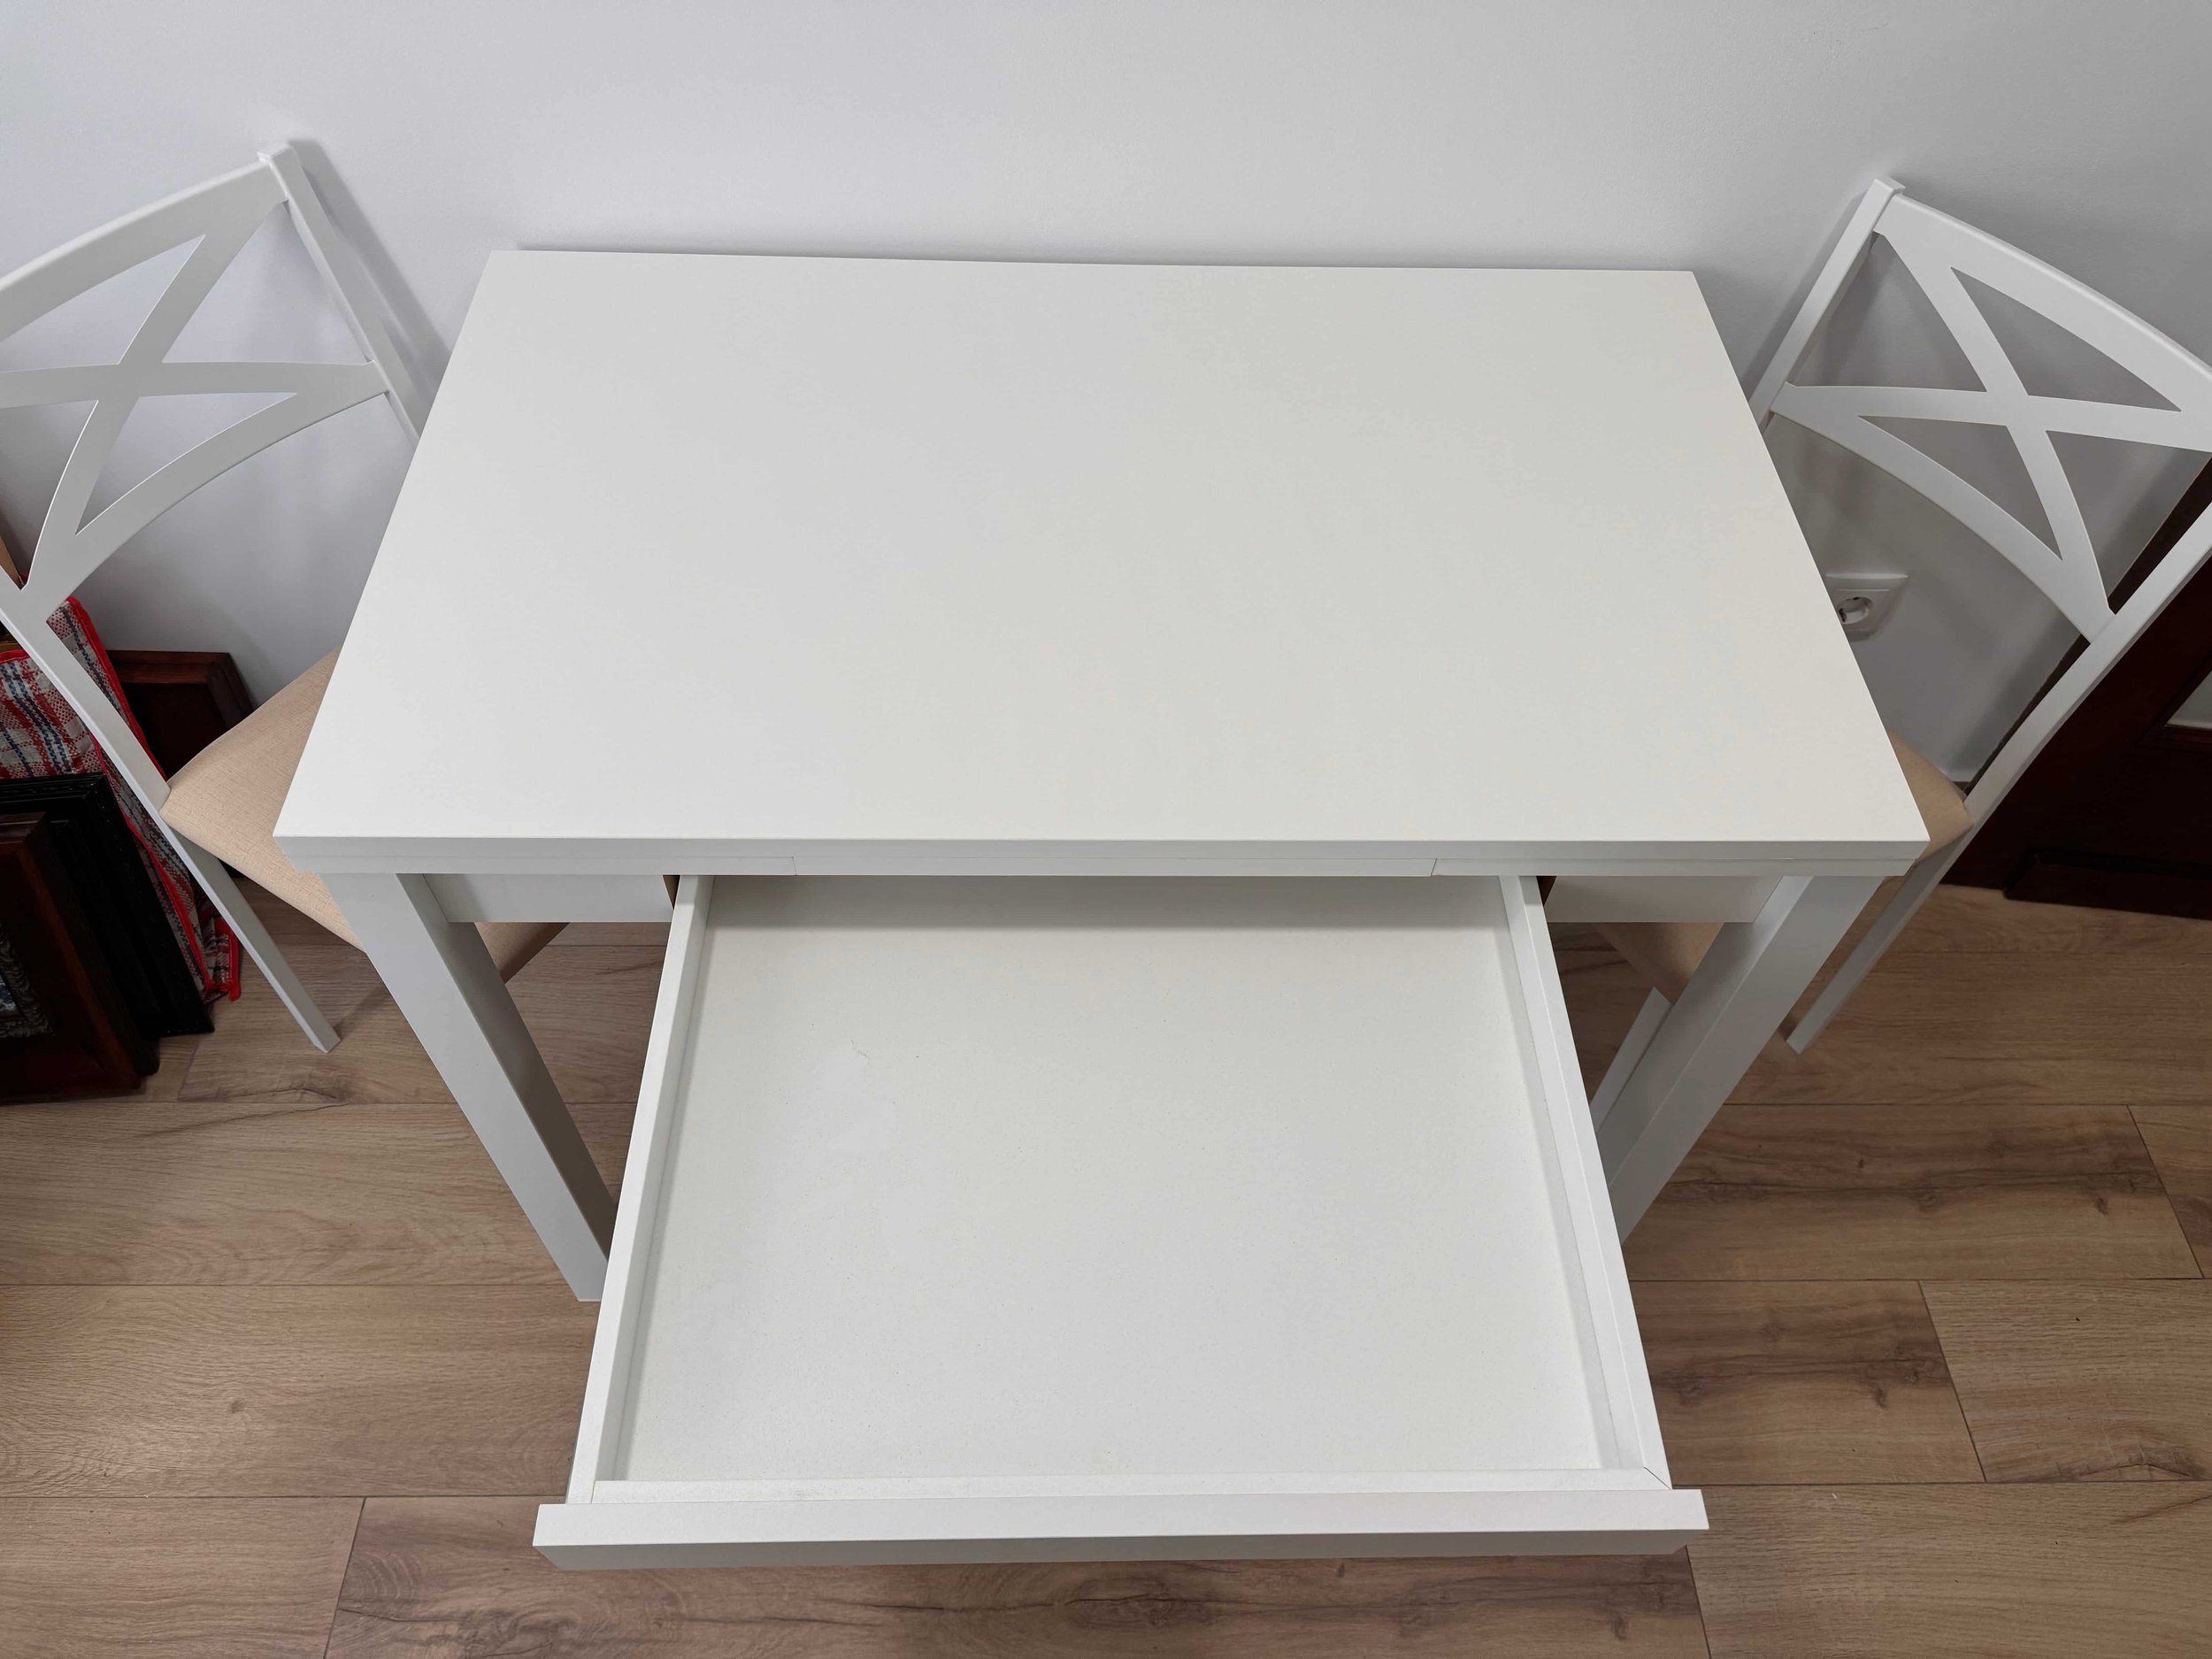 Mesa de cocina extensible con cajón cubertero Claudia moderna, blanca